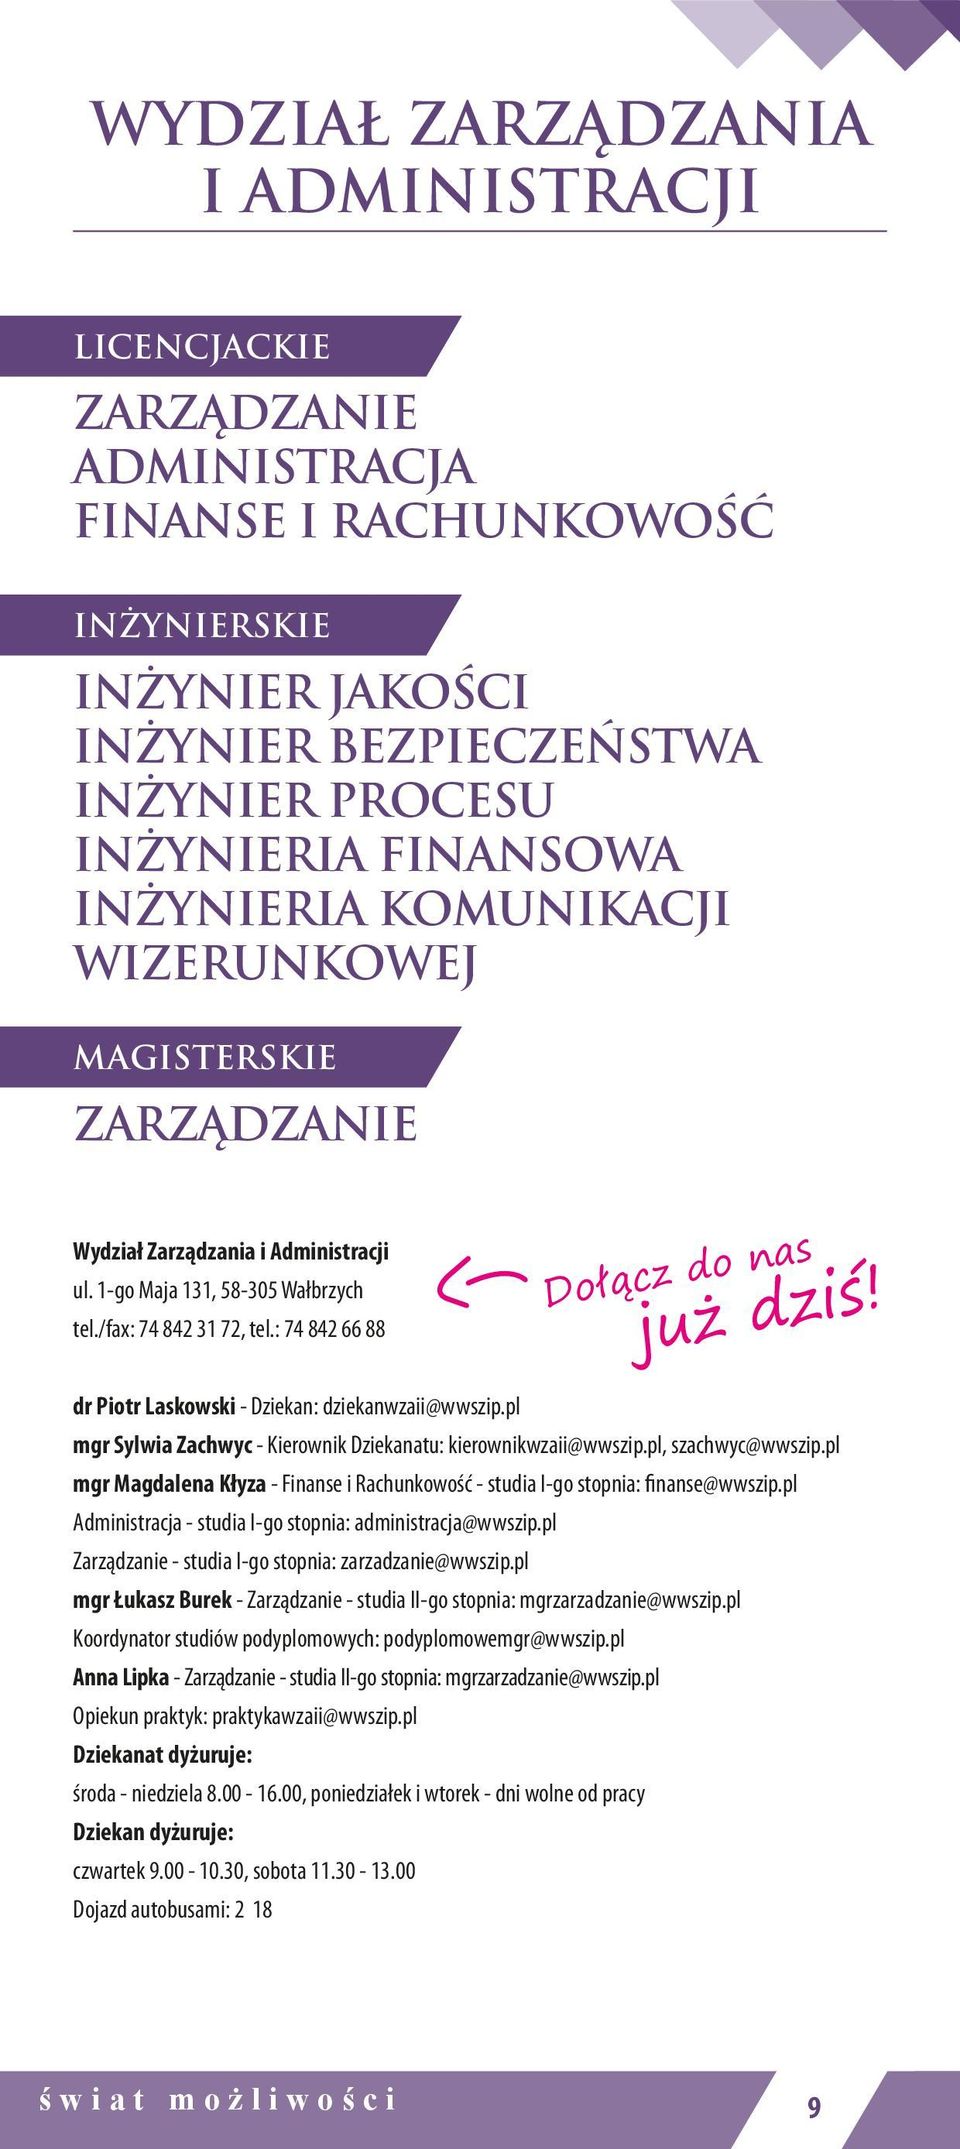 dr Piotr Laskowski - Dziekan: dziekanwzaii@wwszip.pl mgr Sylwia Zachwyc - Kierownik Dziekanatu: kierownikwzaii@wwszip.pl, szachwyc@wwszip.